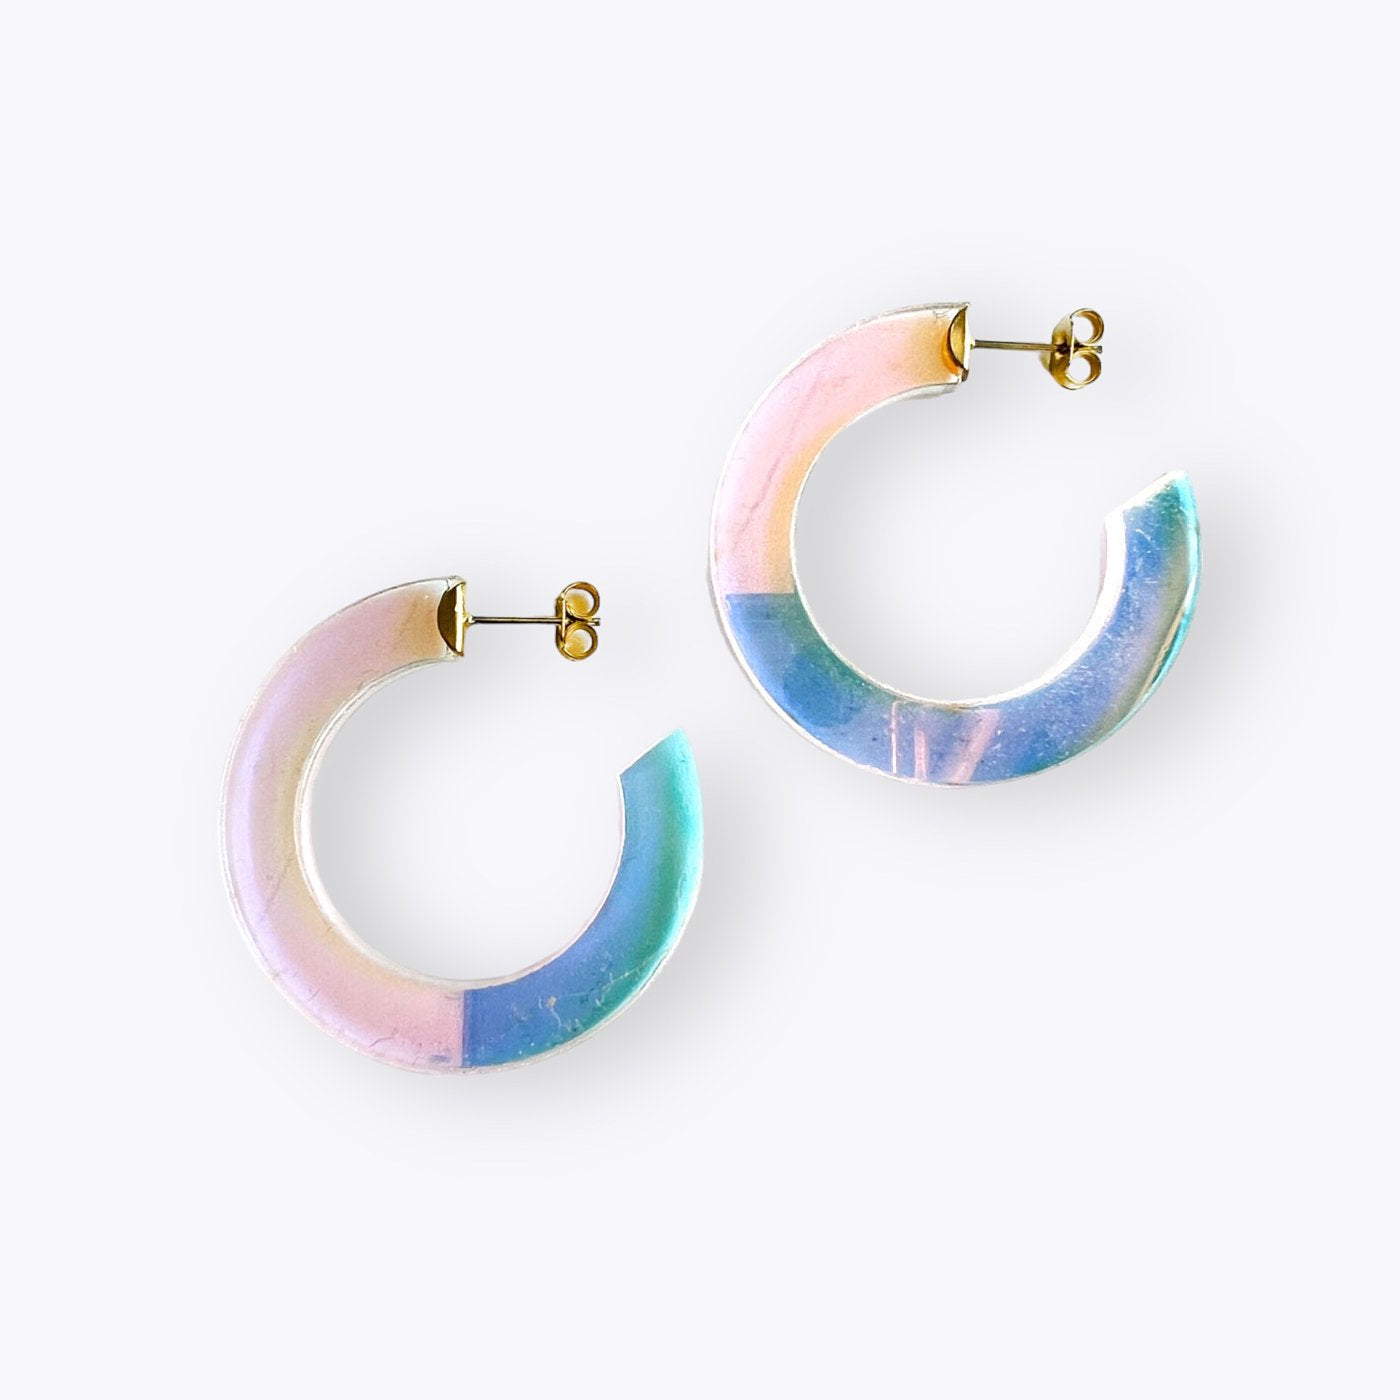 All Things We Like - Hoops Rainbow earrings